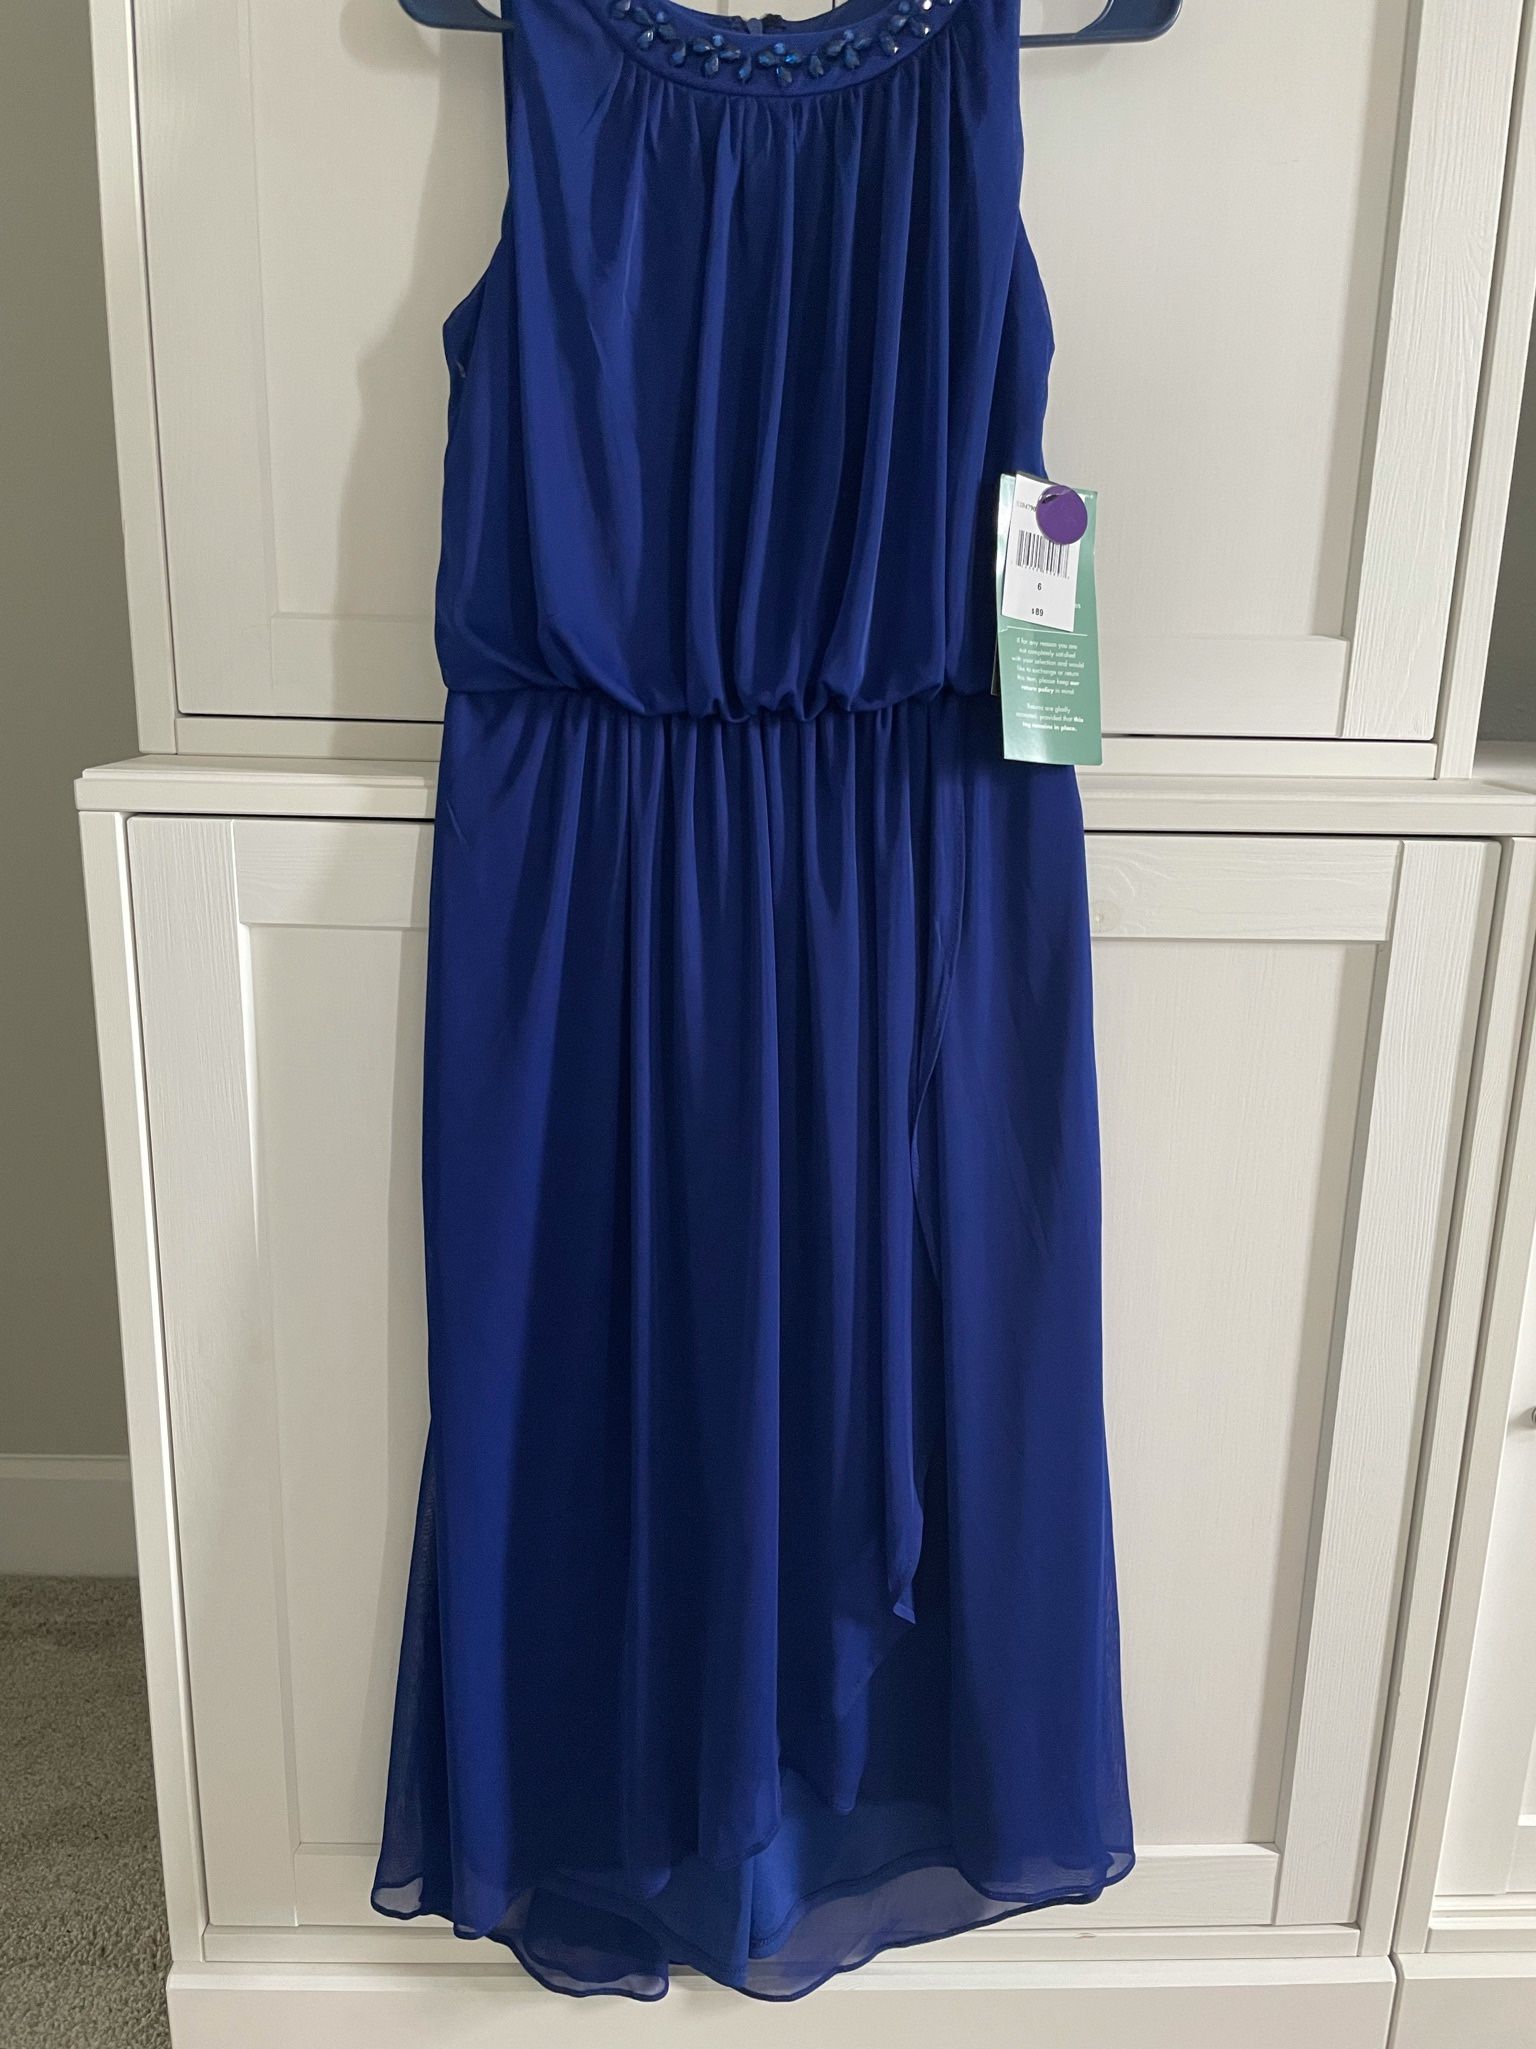 Woman’s Size 6 Royal Blue Dress NEW